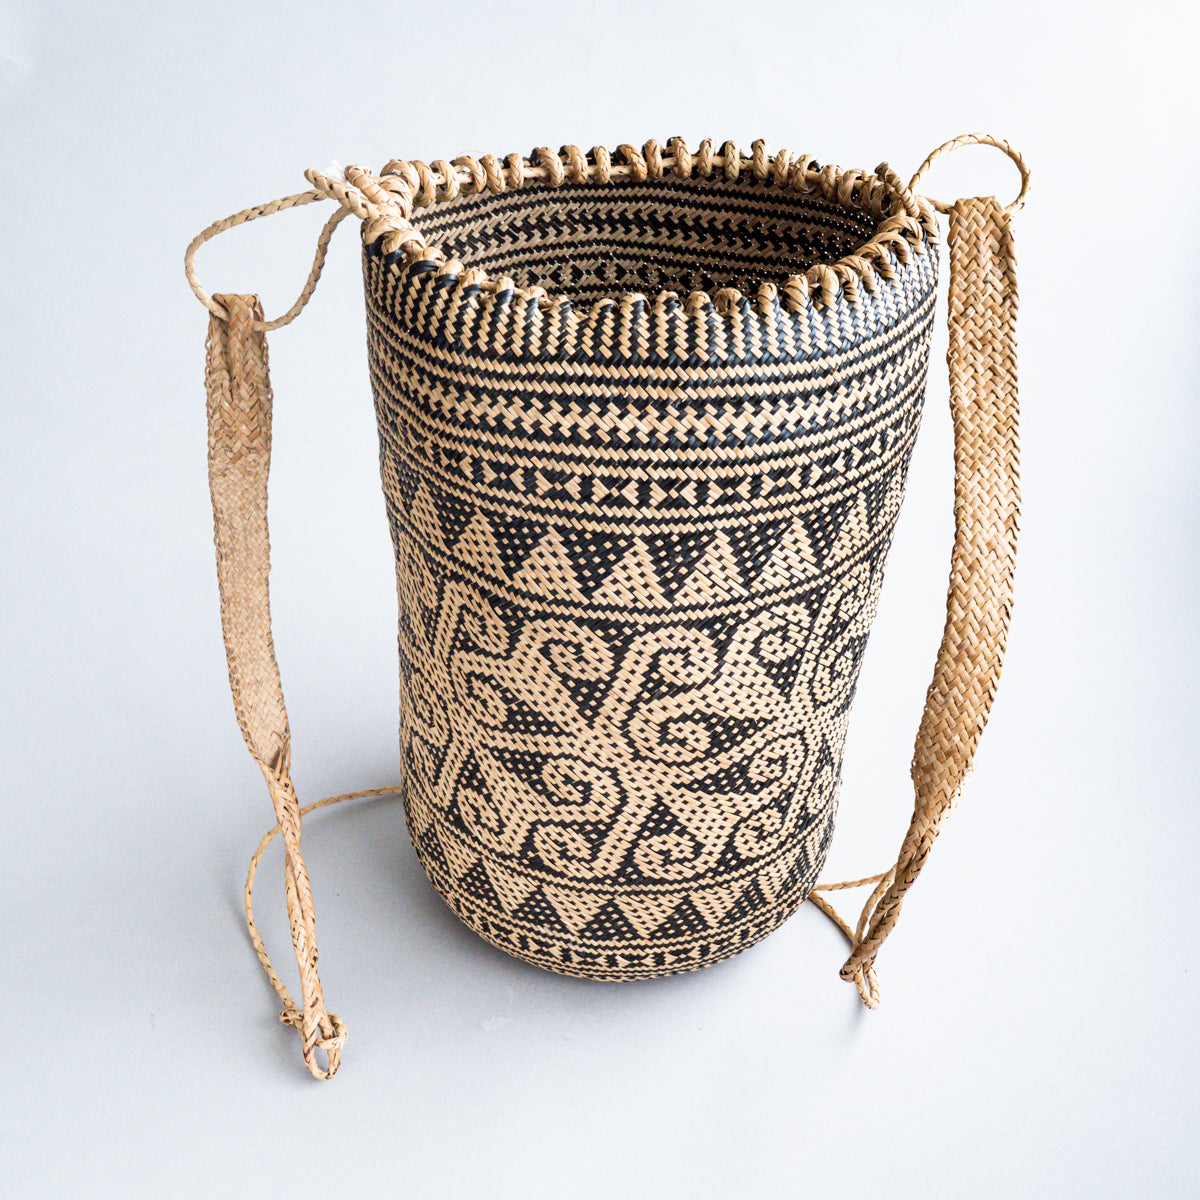 インドネシア群島 (ボルネオ／カリマンタン) ラタン製背負い籠 - 工芸品